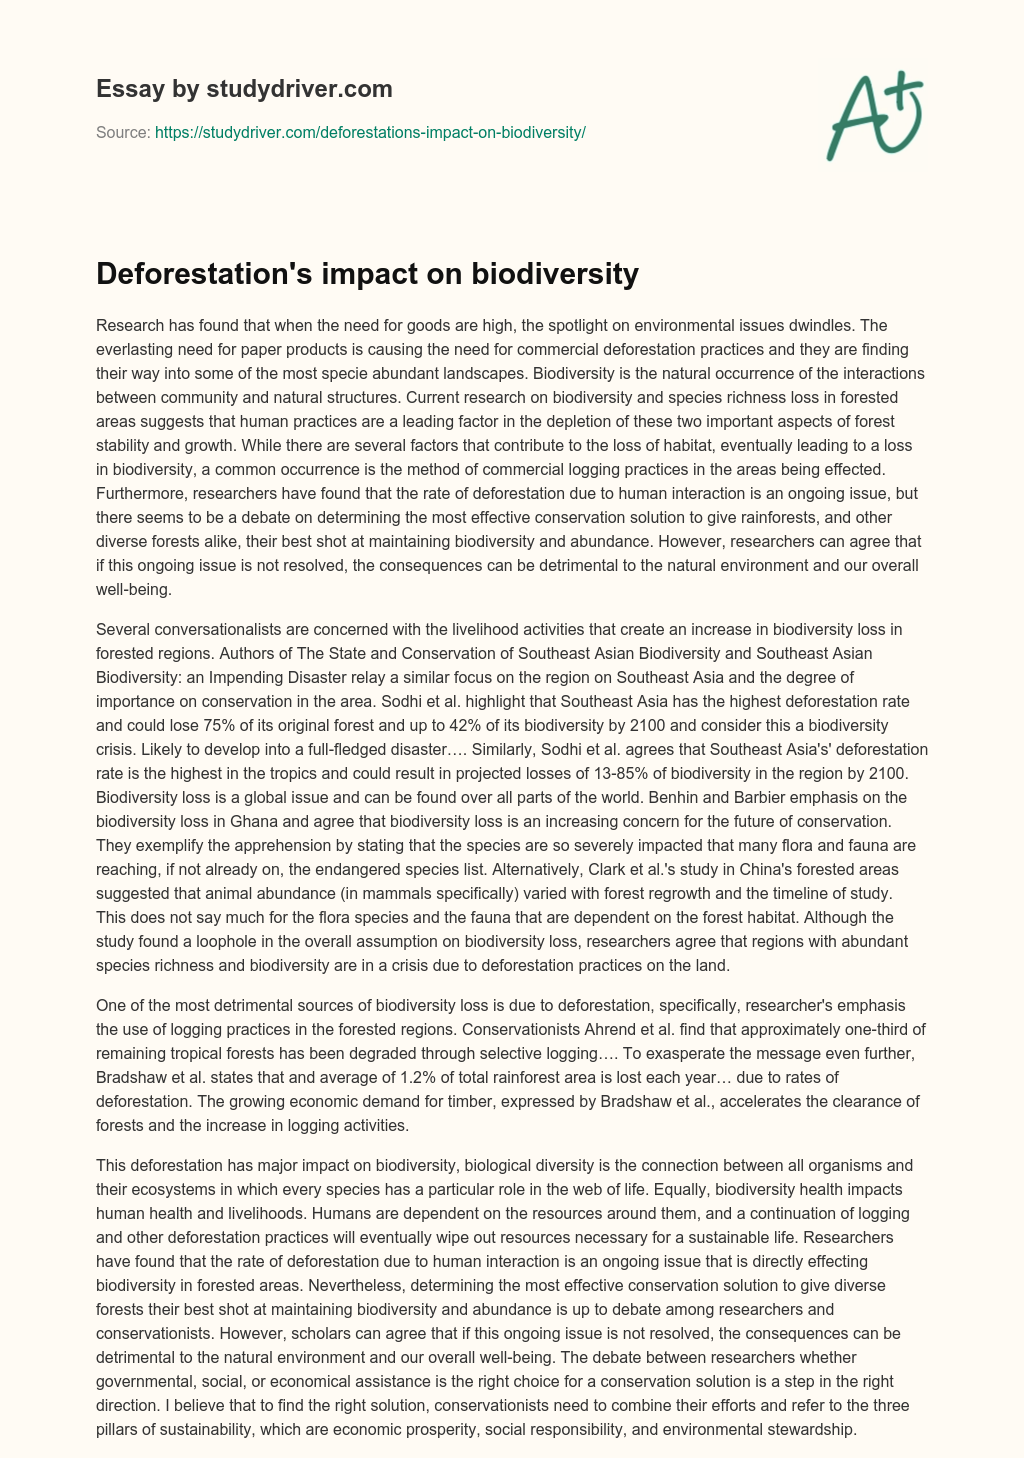 Deforestation’s Impact on Biodiversity essay